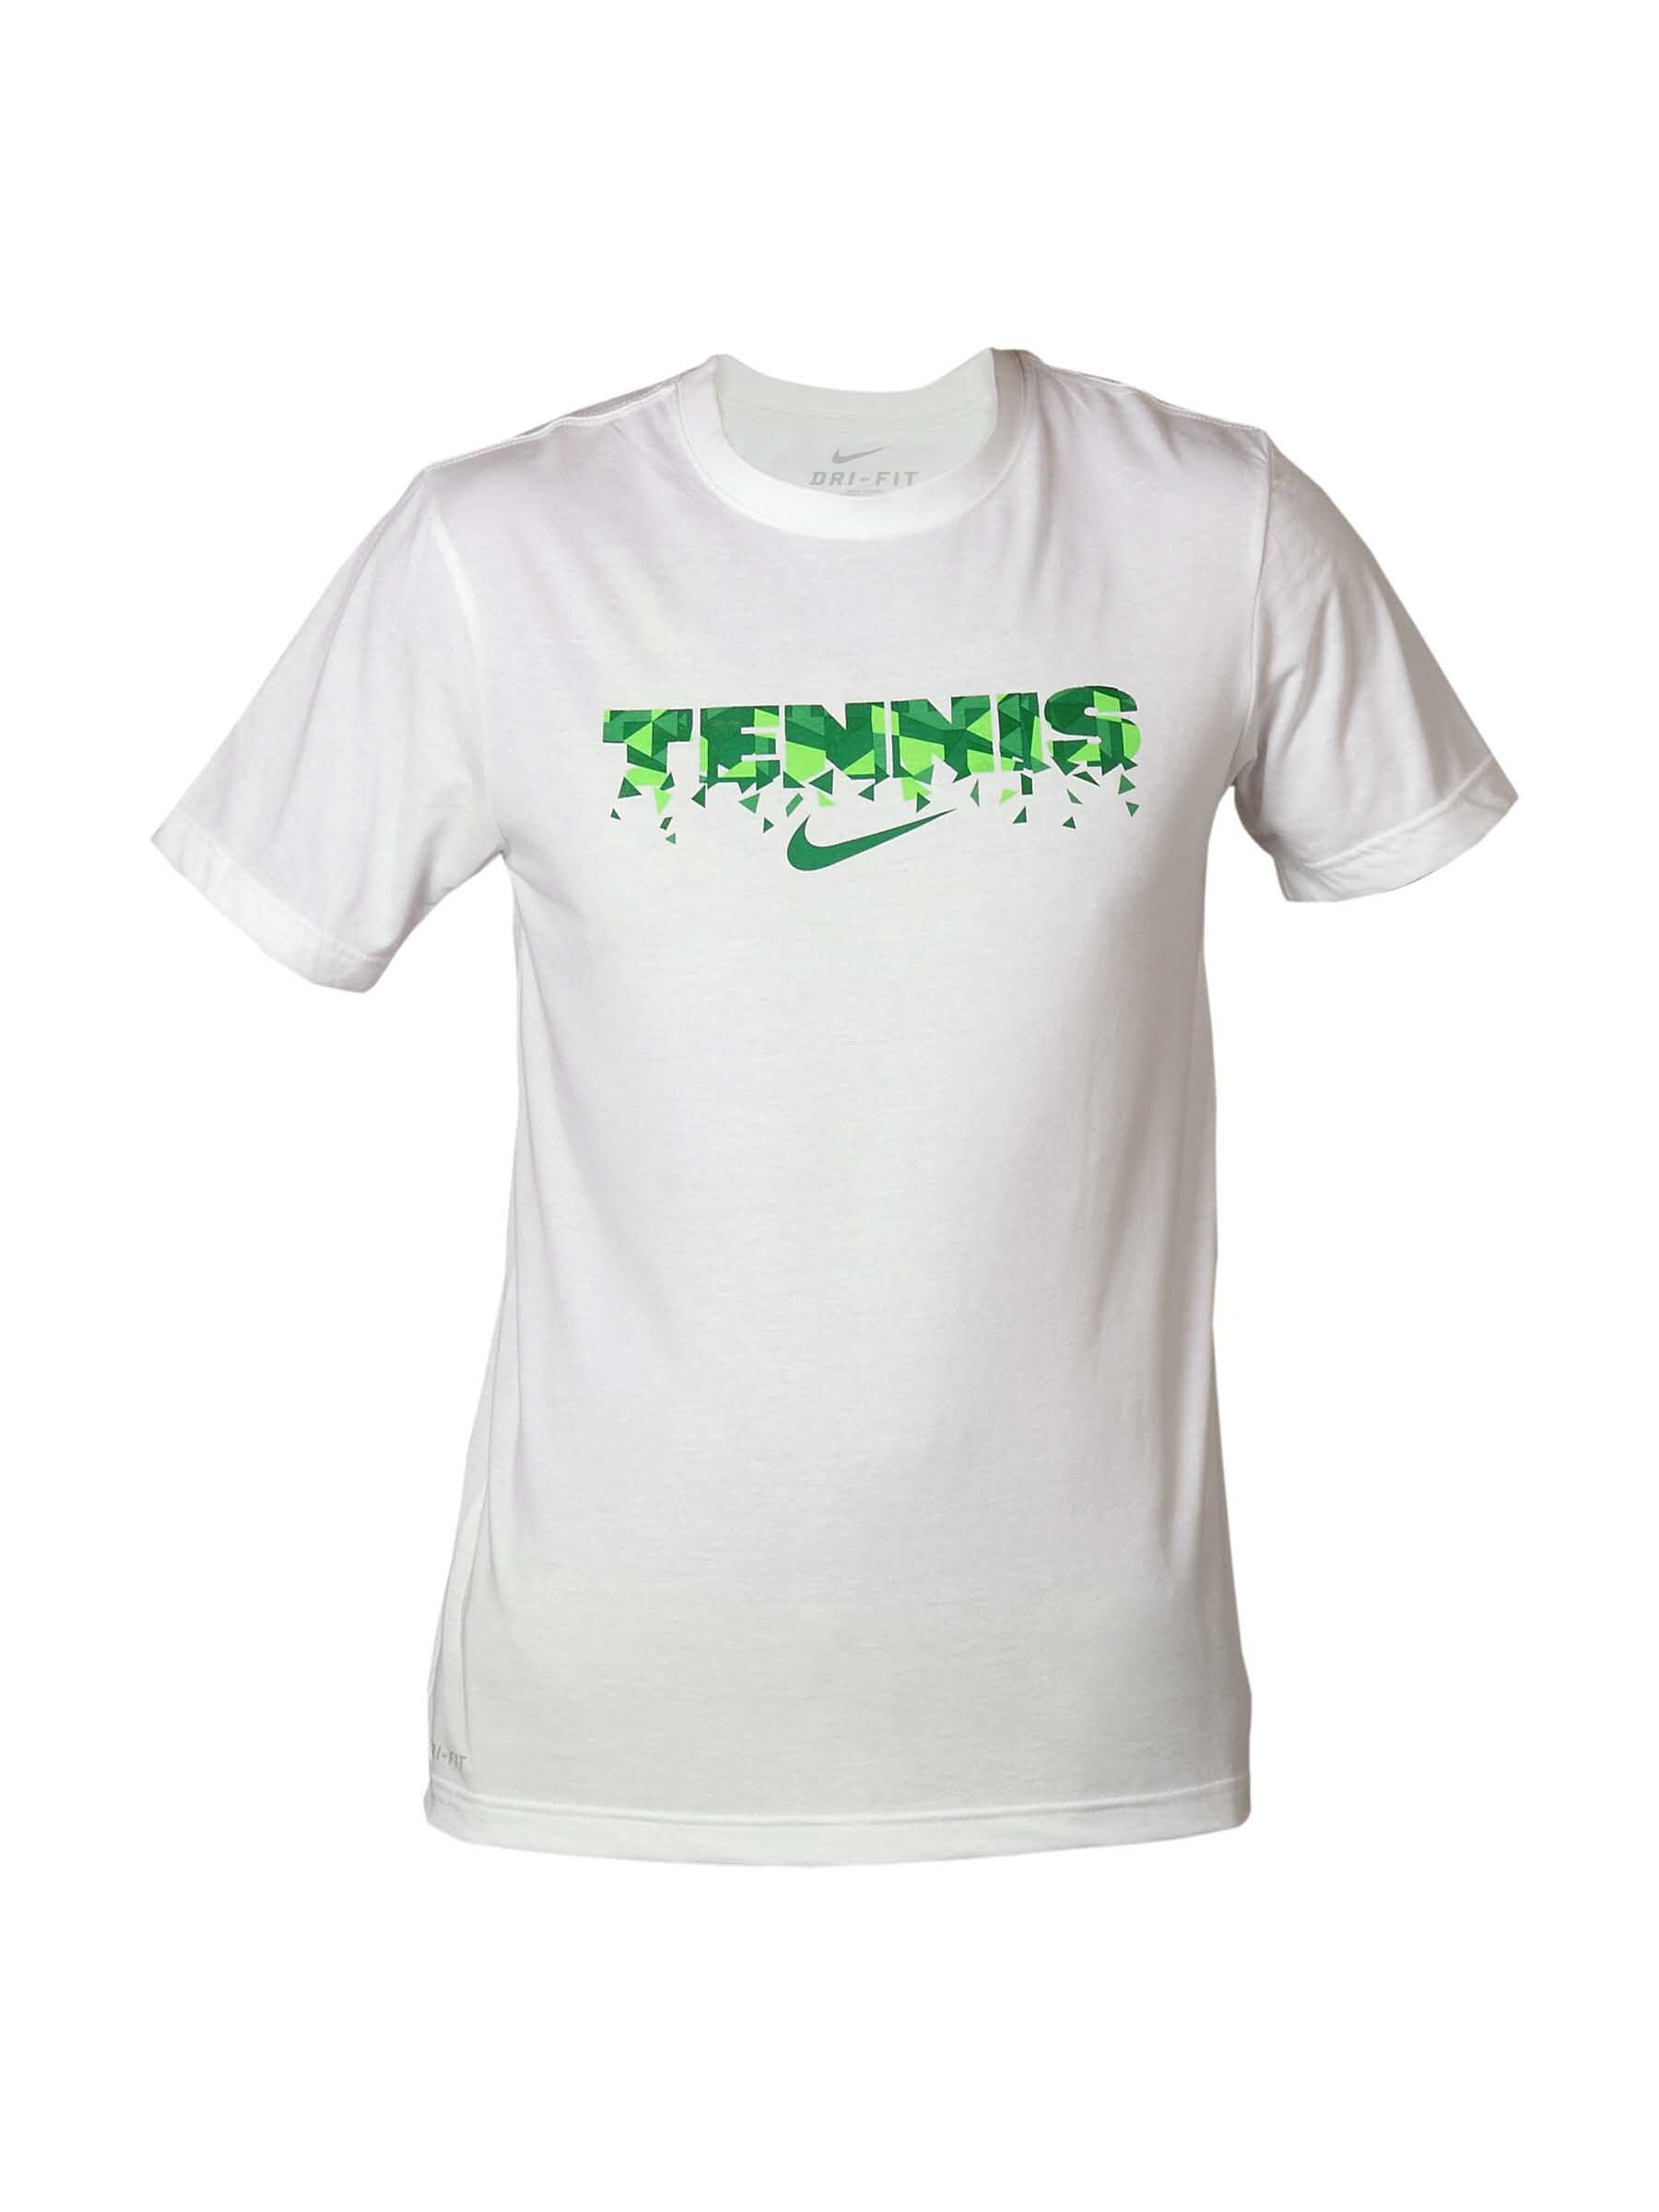 Nike Men Printed Tennis White T-shirt